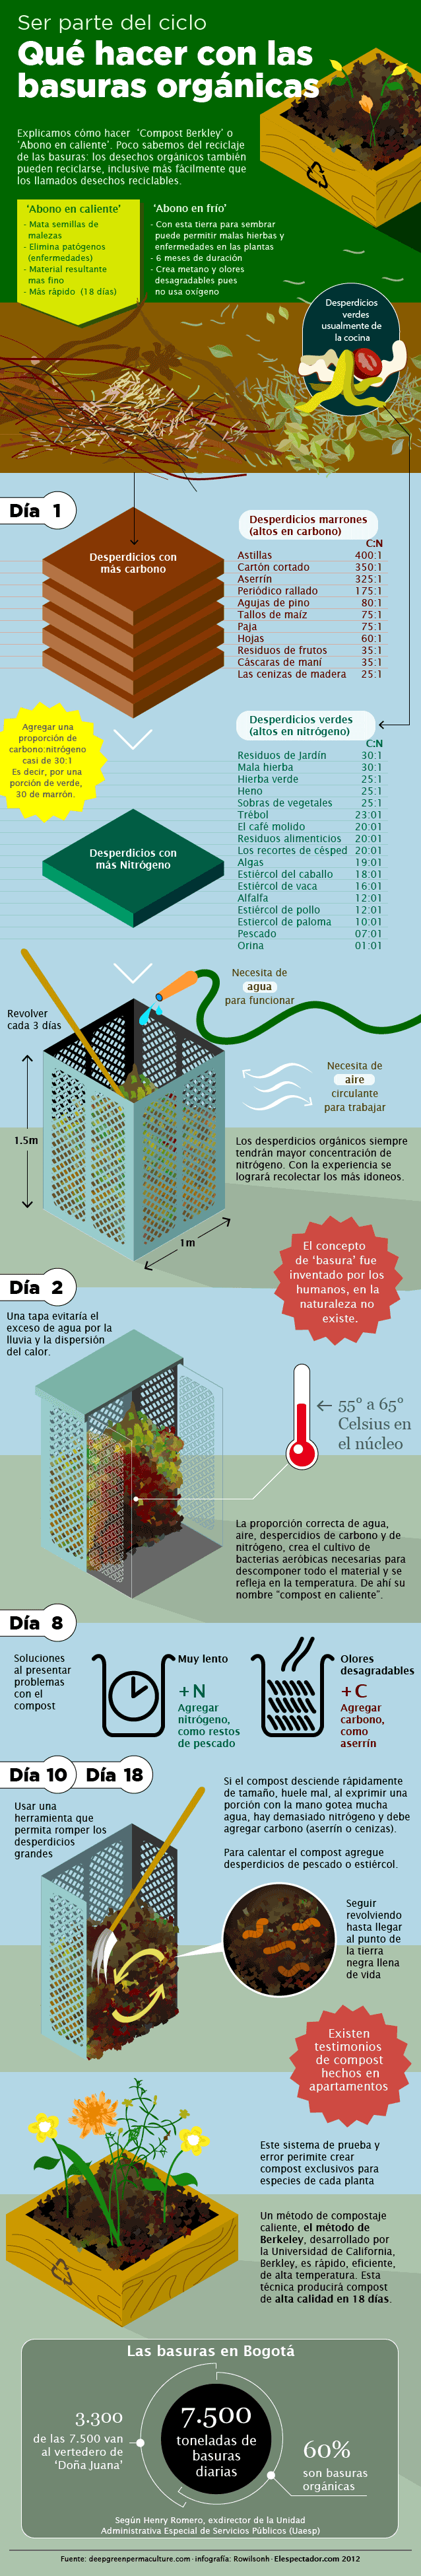 Qué hacer con las basuras orgánicas Infographic